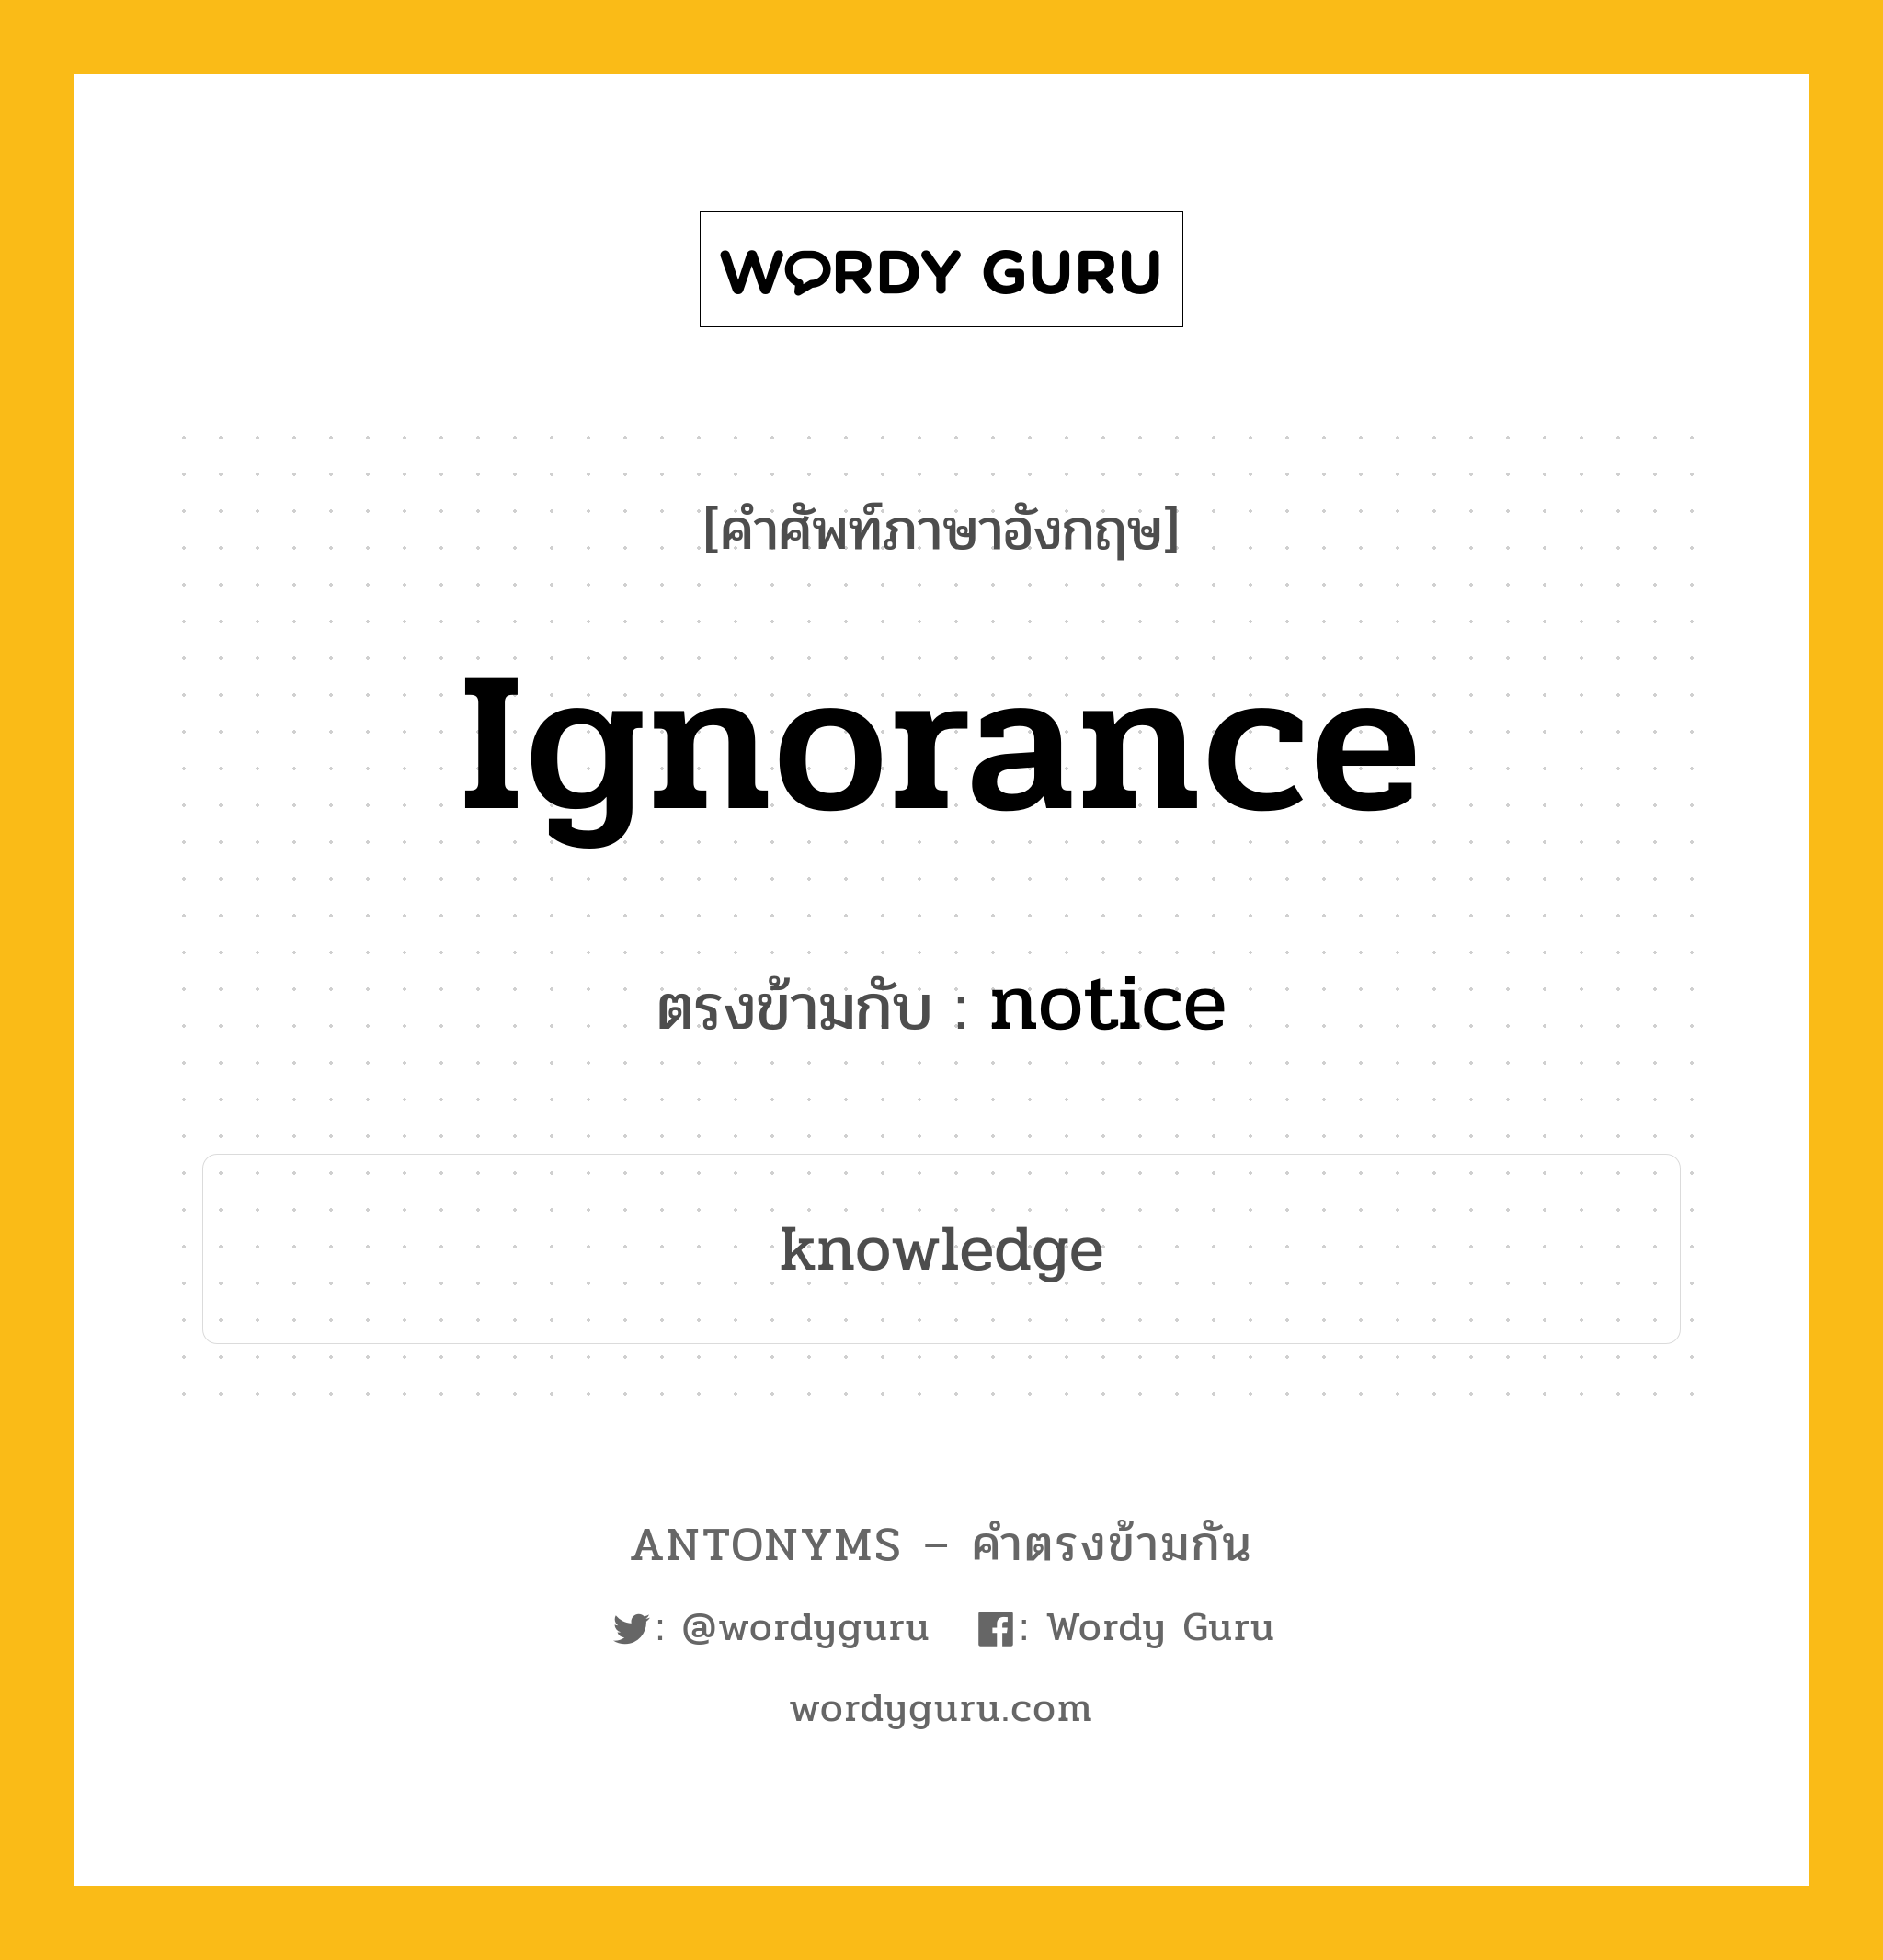 ignorance เป็นคำตรงข้ามกับคำไหนบ้าง?, คำศัพท์ภาษาอังกฤษ ignorance ตรงข้ามกับ notice หมวด notice